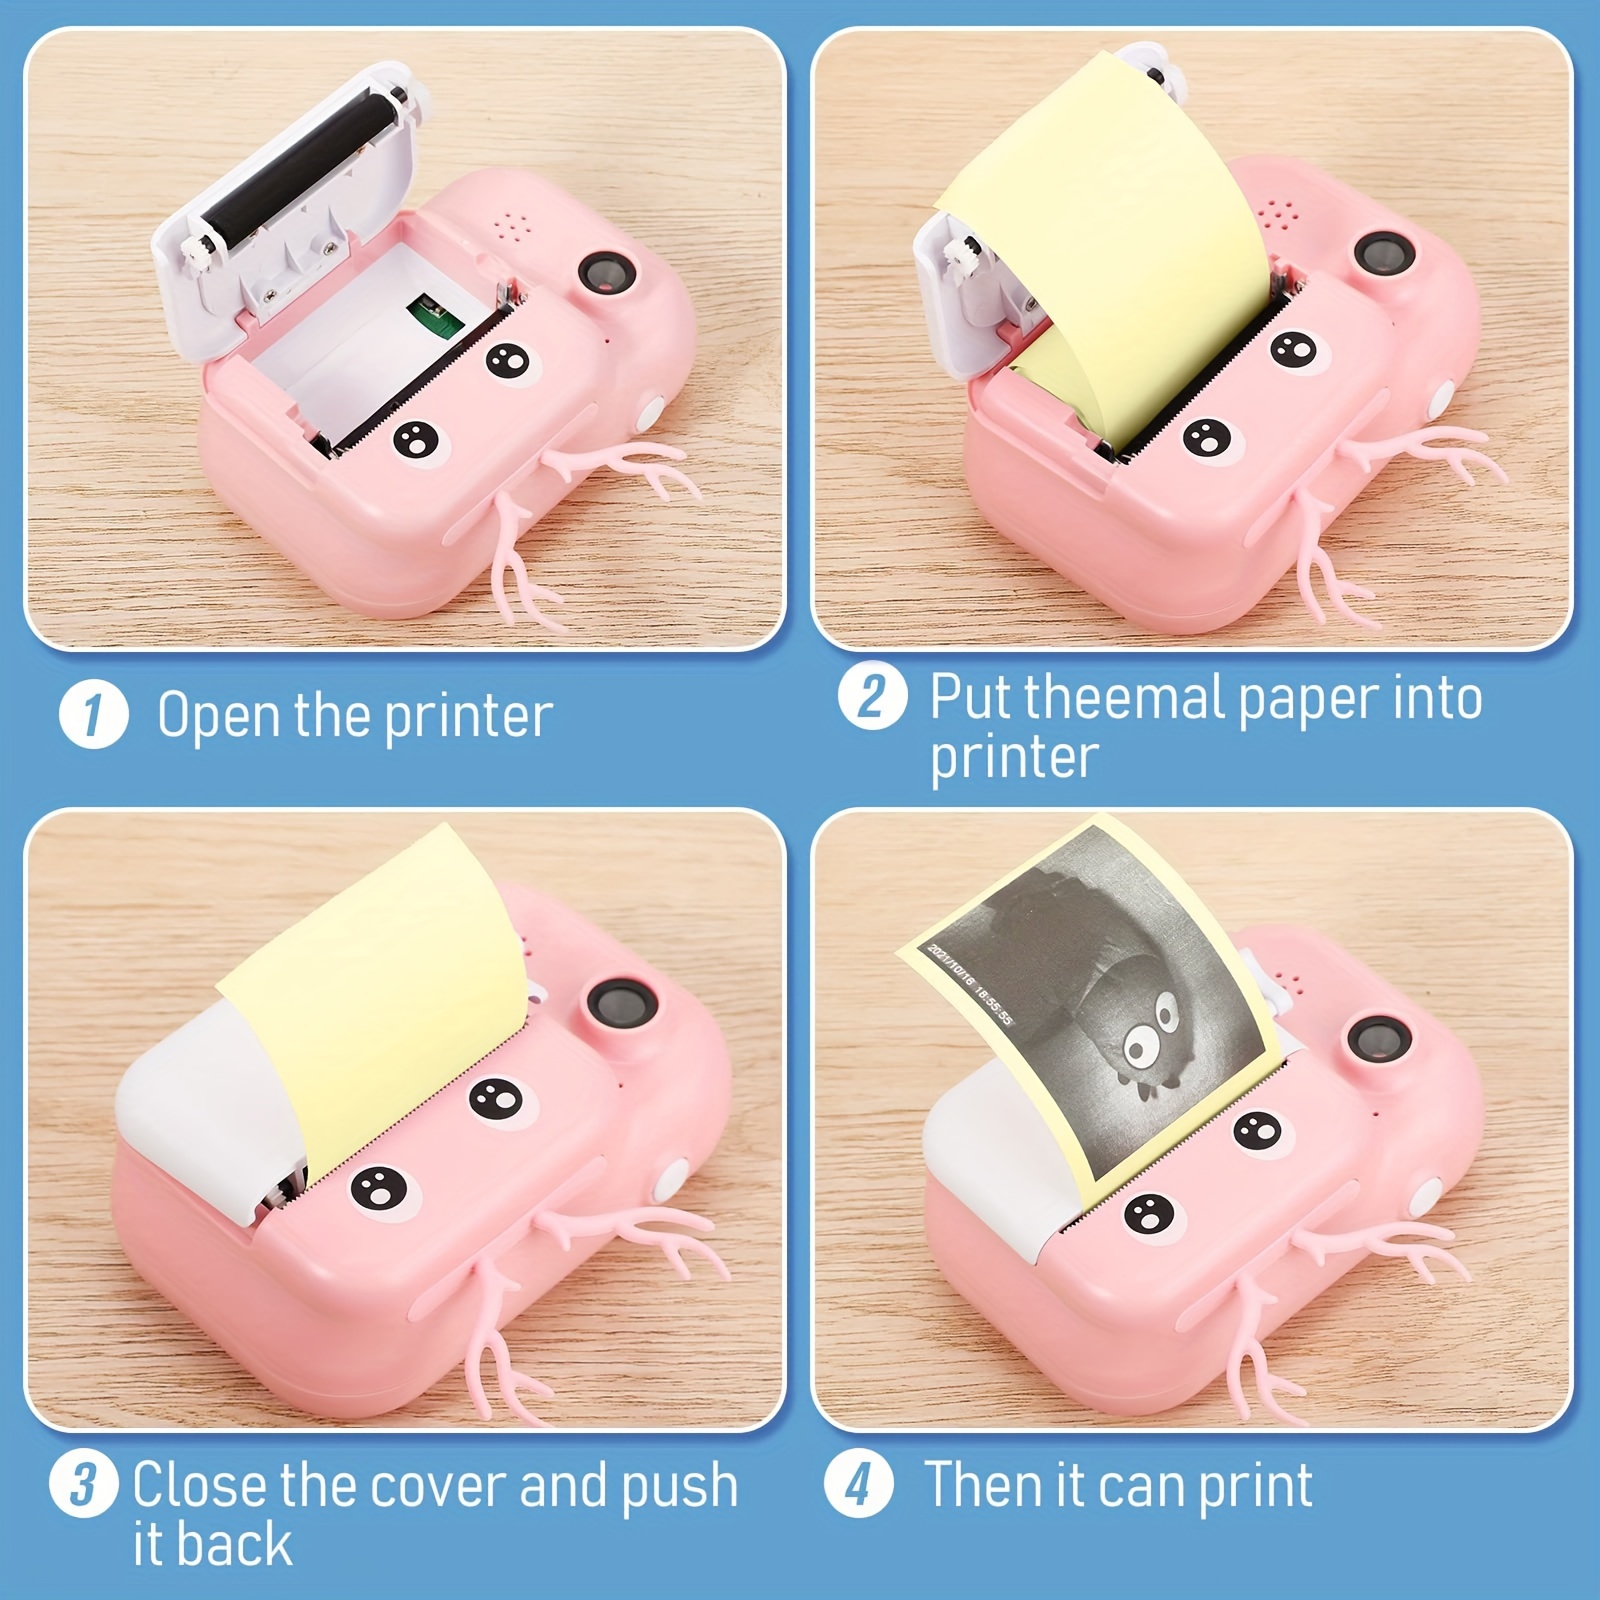 Mini Printer Paper Colorful Adhesive Self adhesive Paper - Temu